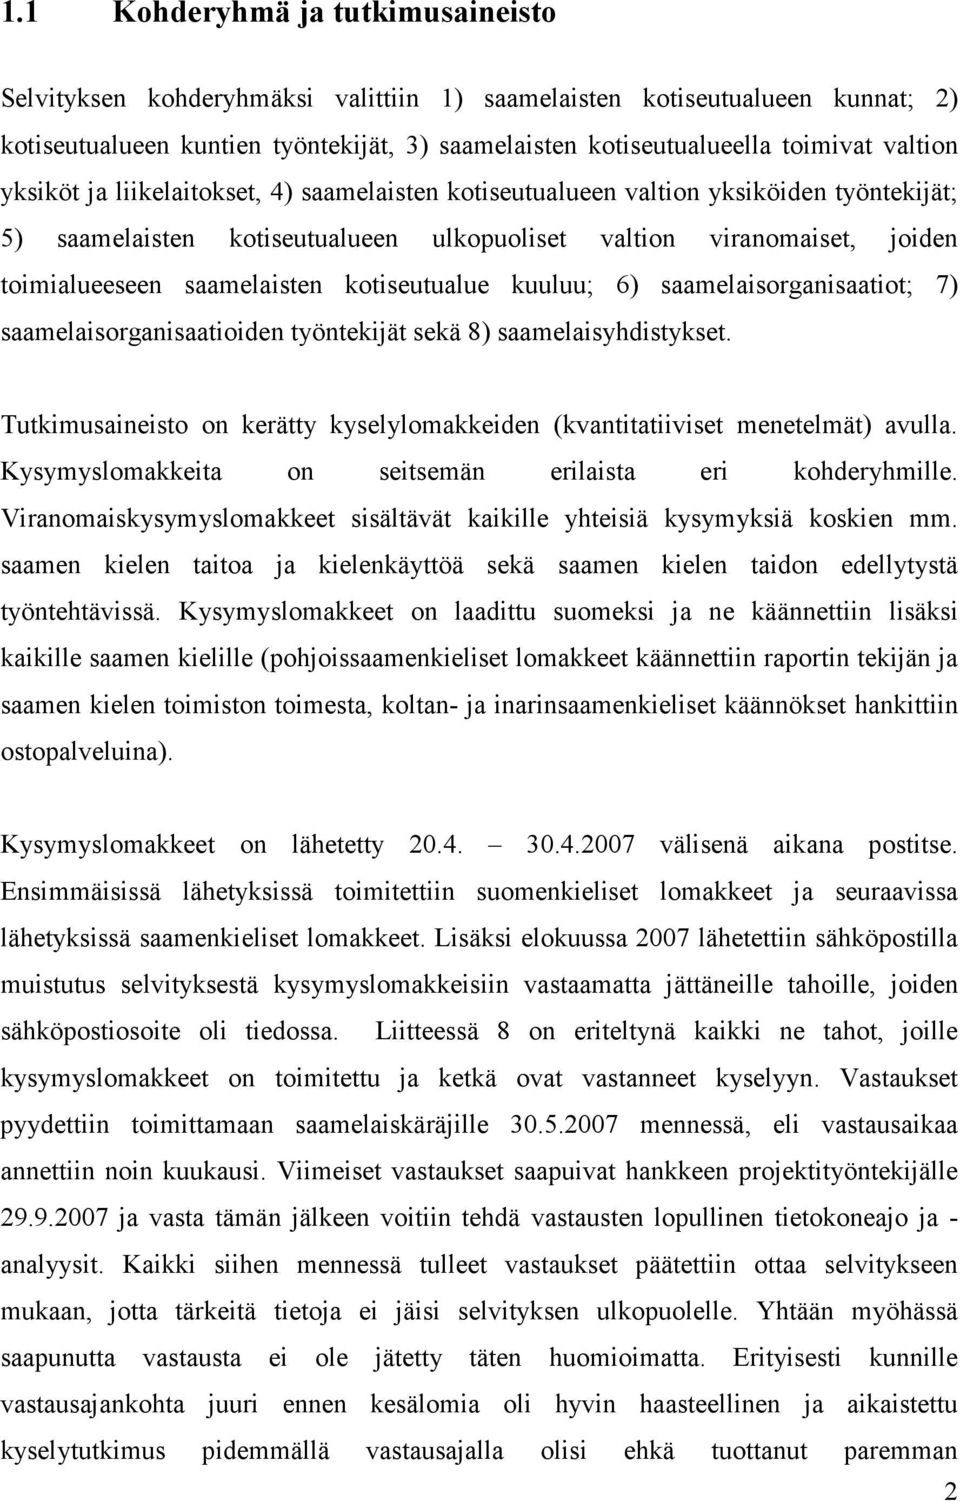 saamelaisten kotiseutualue kuuluu; 6) saamelaisorganisaatiot; 7) saamelaisorganisaatioiden työntekijät sekä 8) saamelaisyhdistykset.